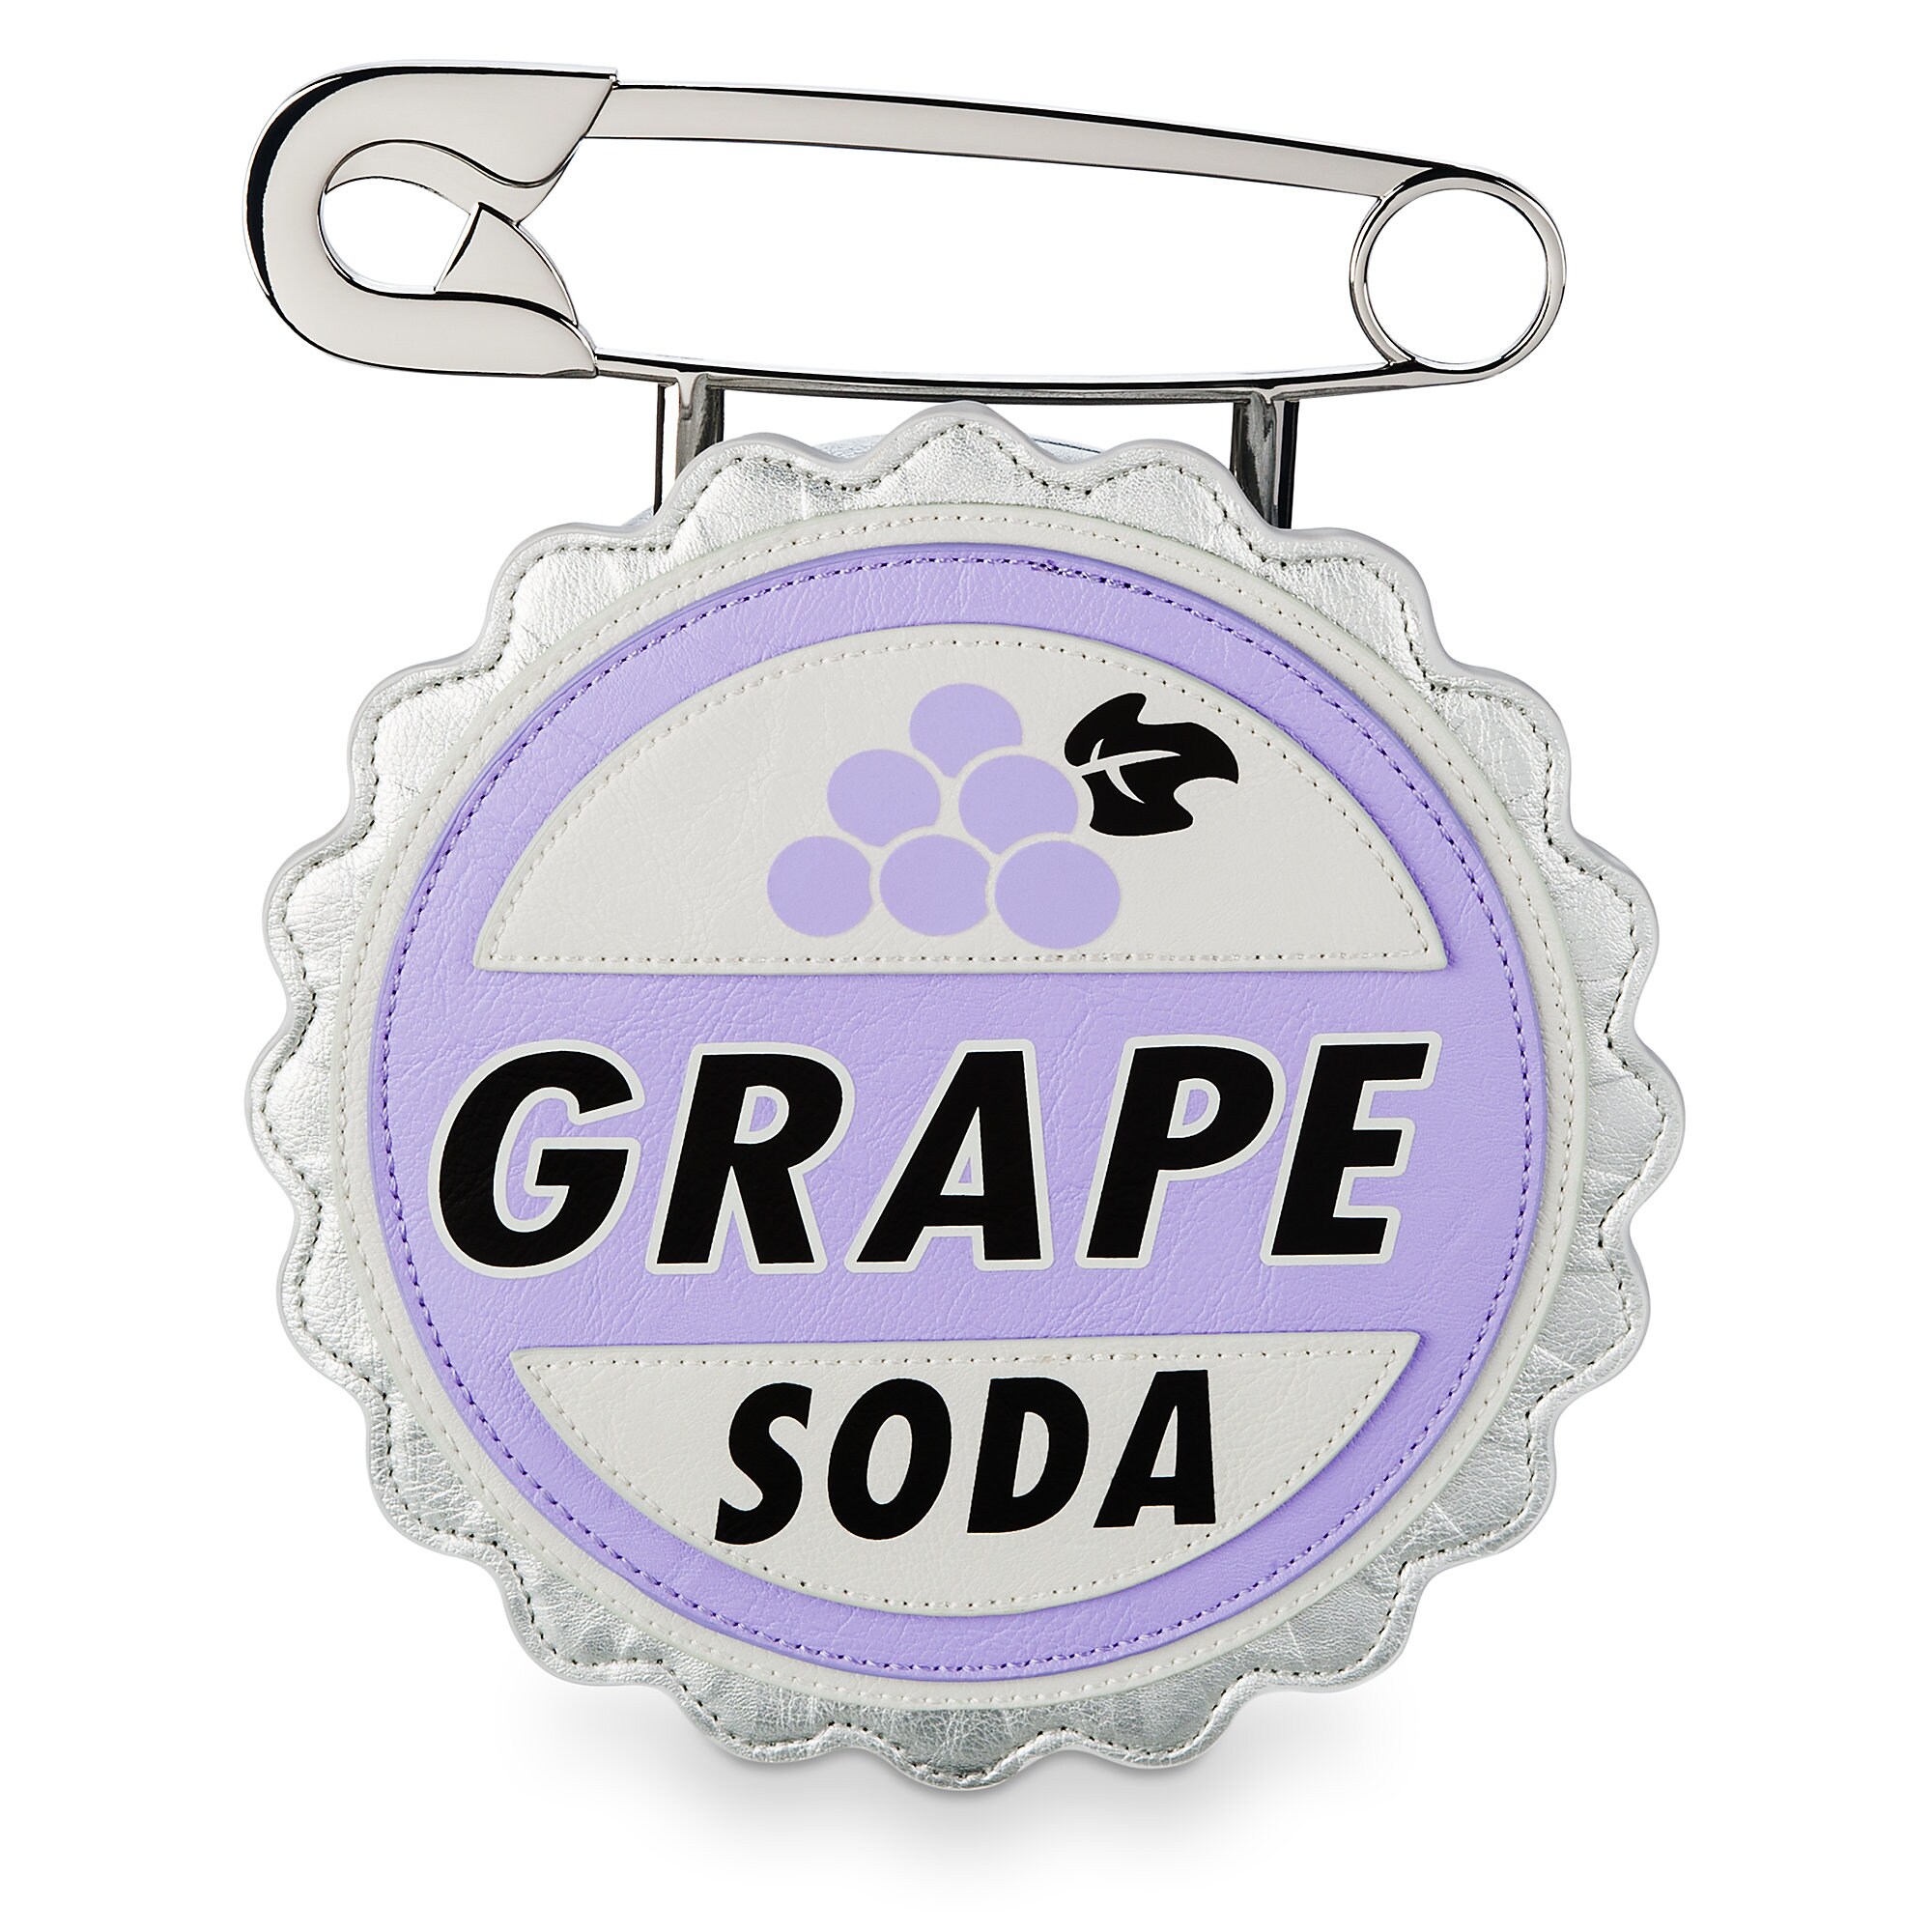 Grape Soda Handbag - Up